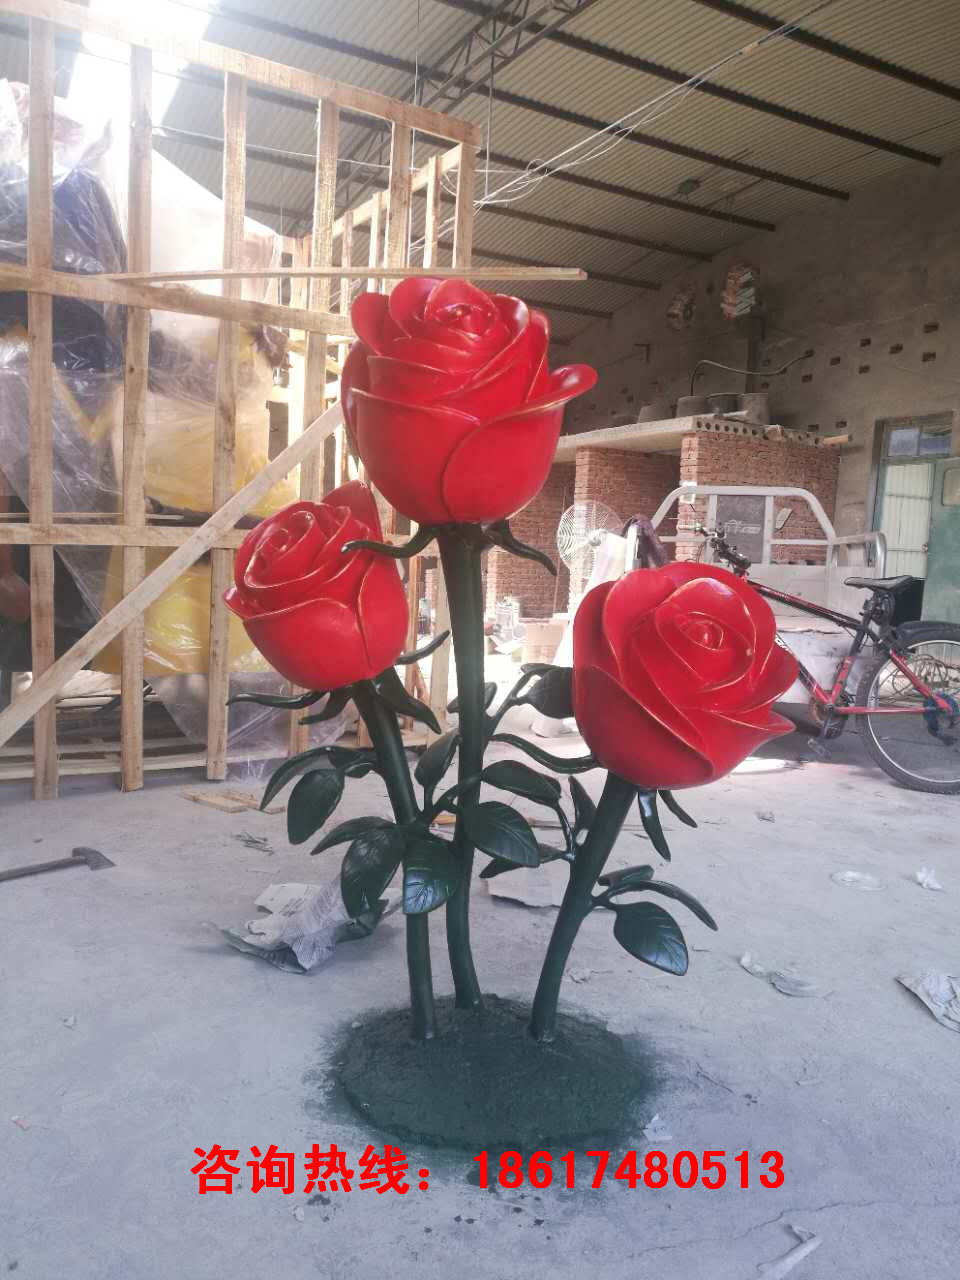 玻璃钢仿真玫瑰花雕塑摆件批发